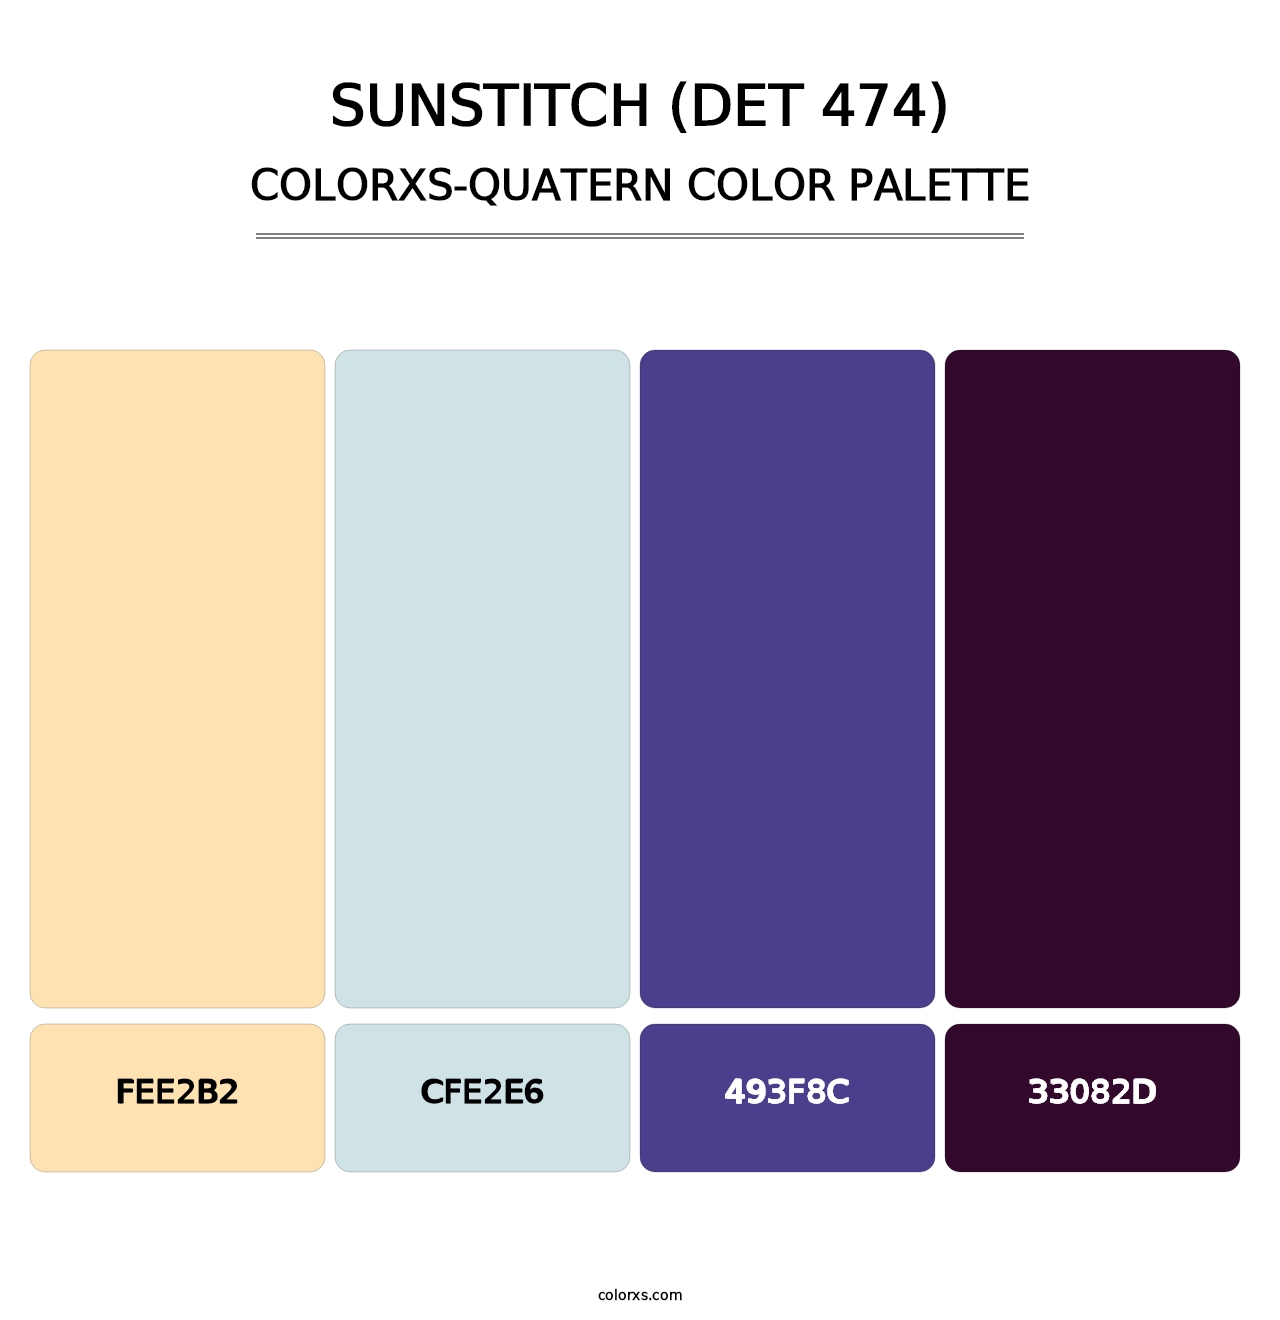 Sunstitch (DET 474) - Colorxs Quatern Palette